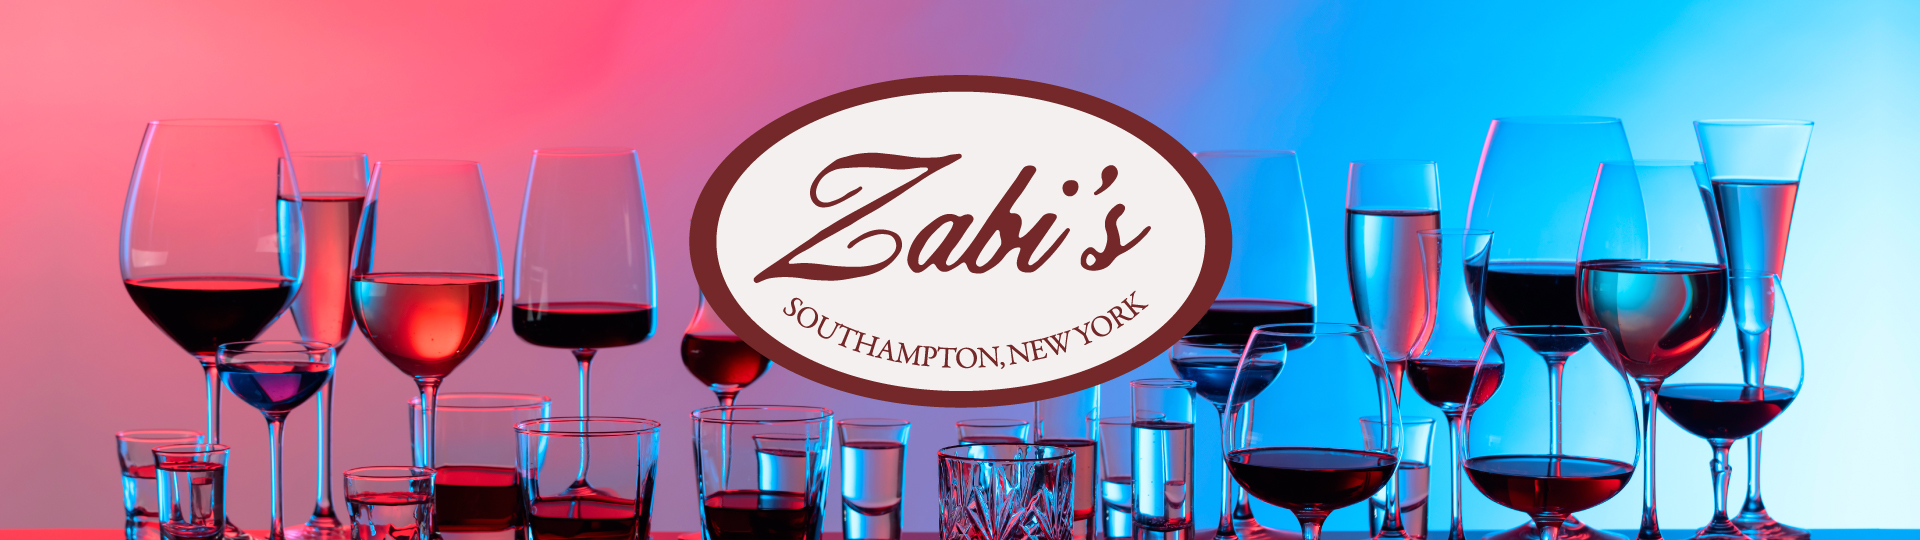 Zabi's Wines & Spirits